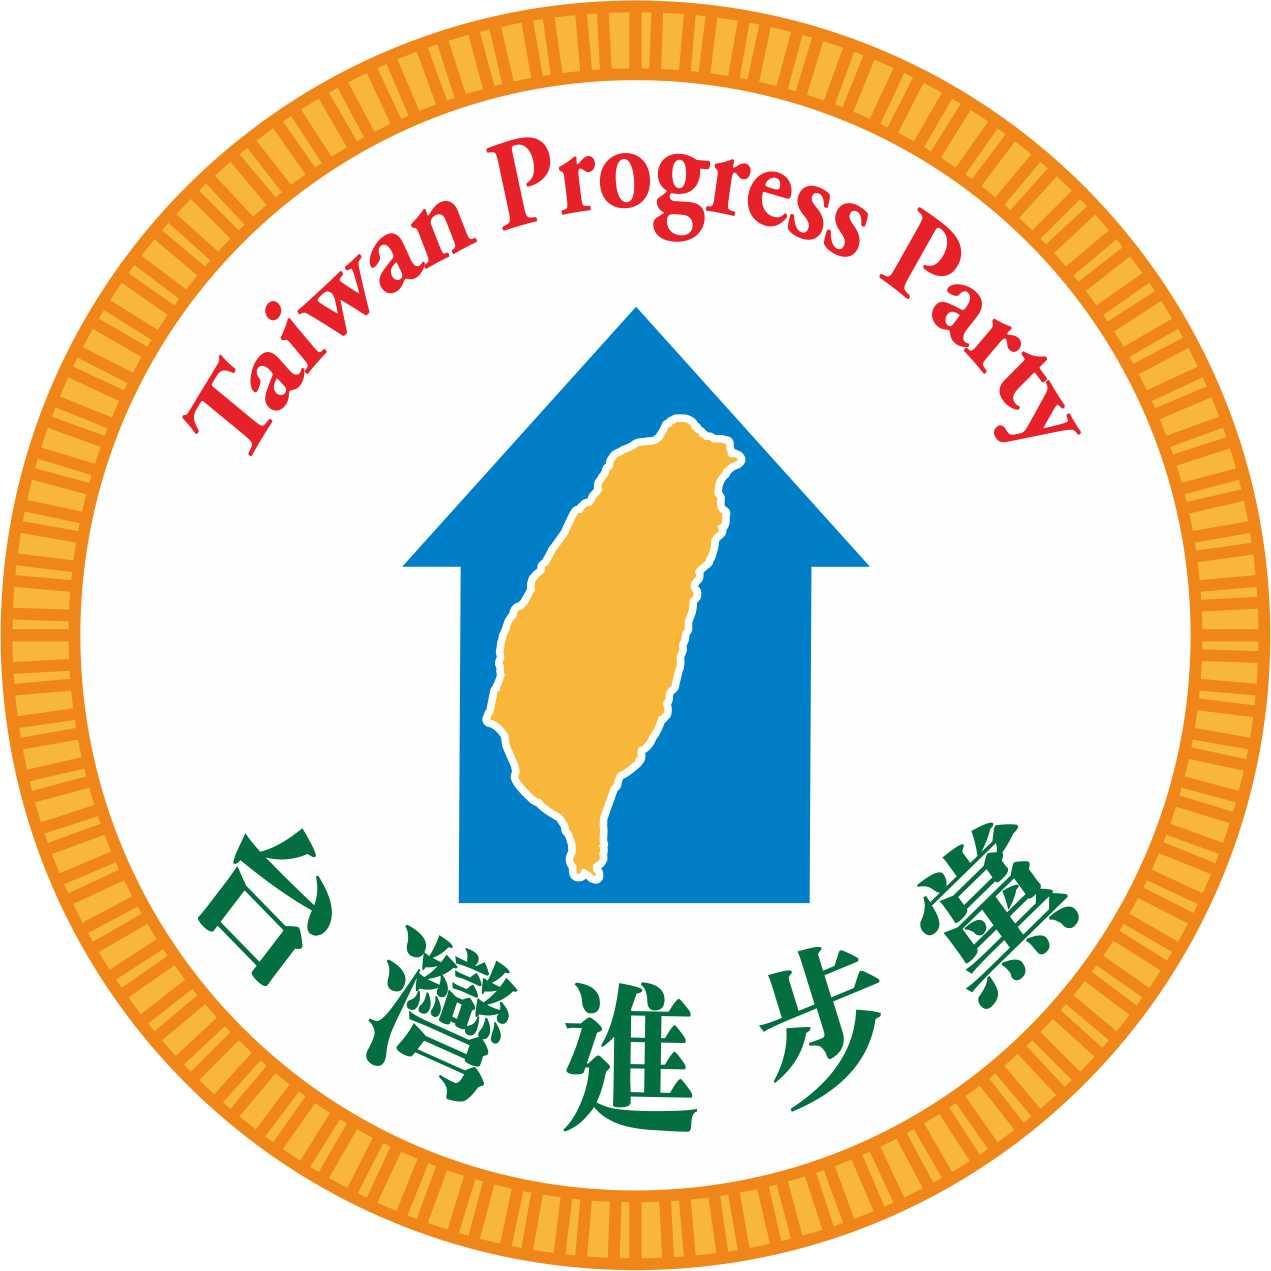 台灣進步黨標章圖